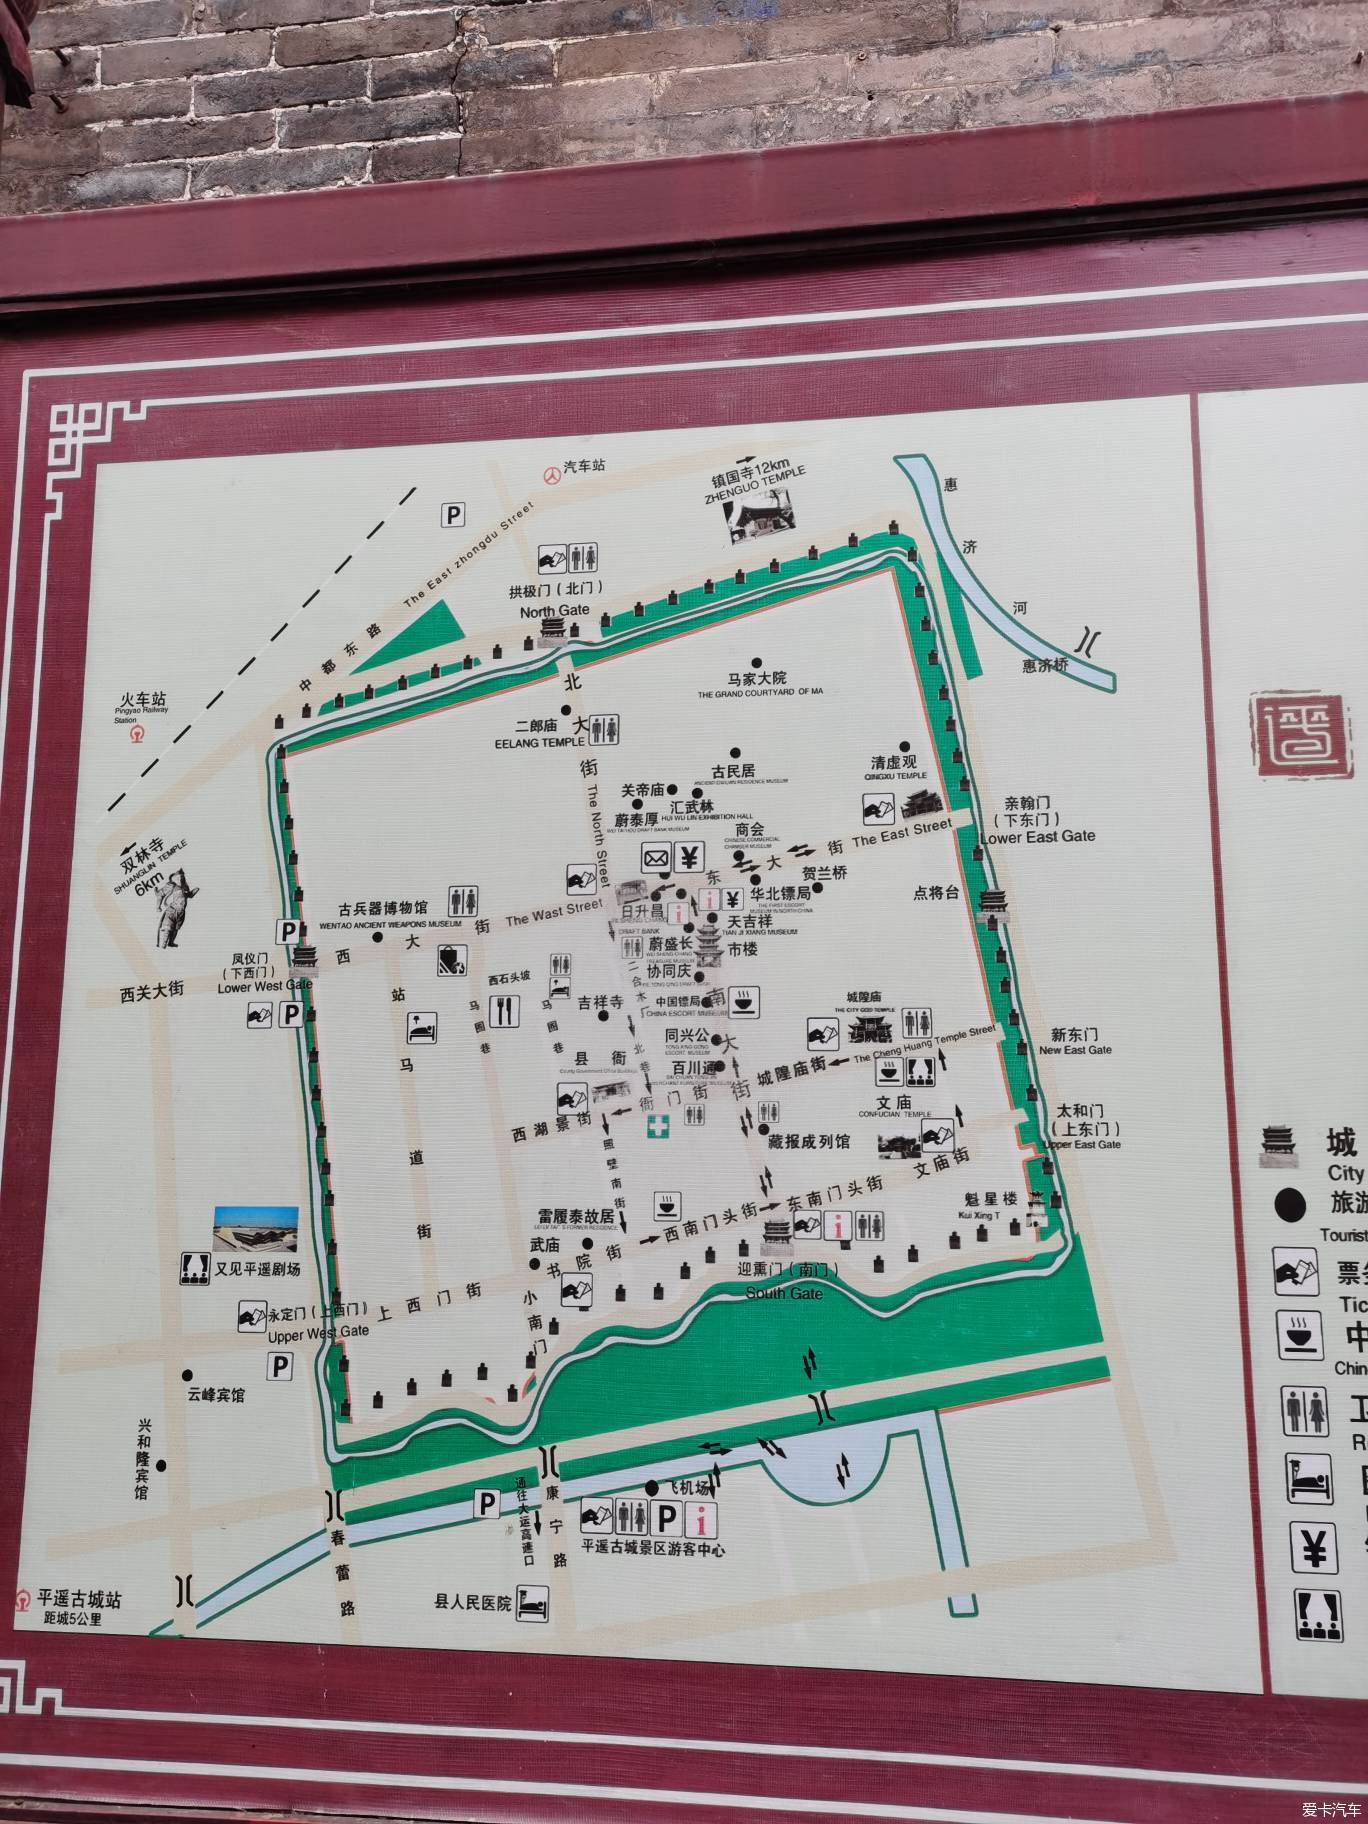 平遥古城地图高清版式图片